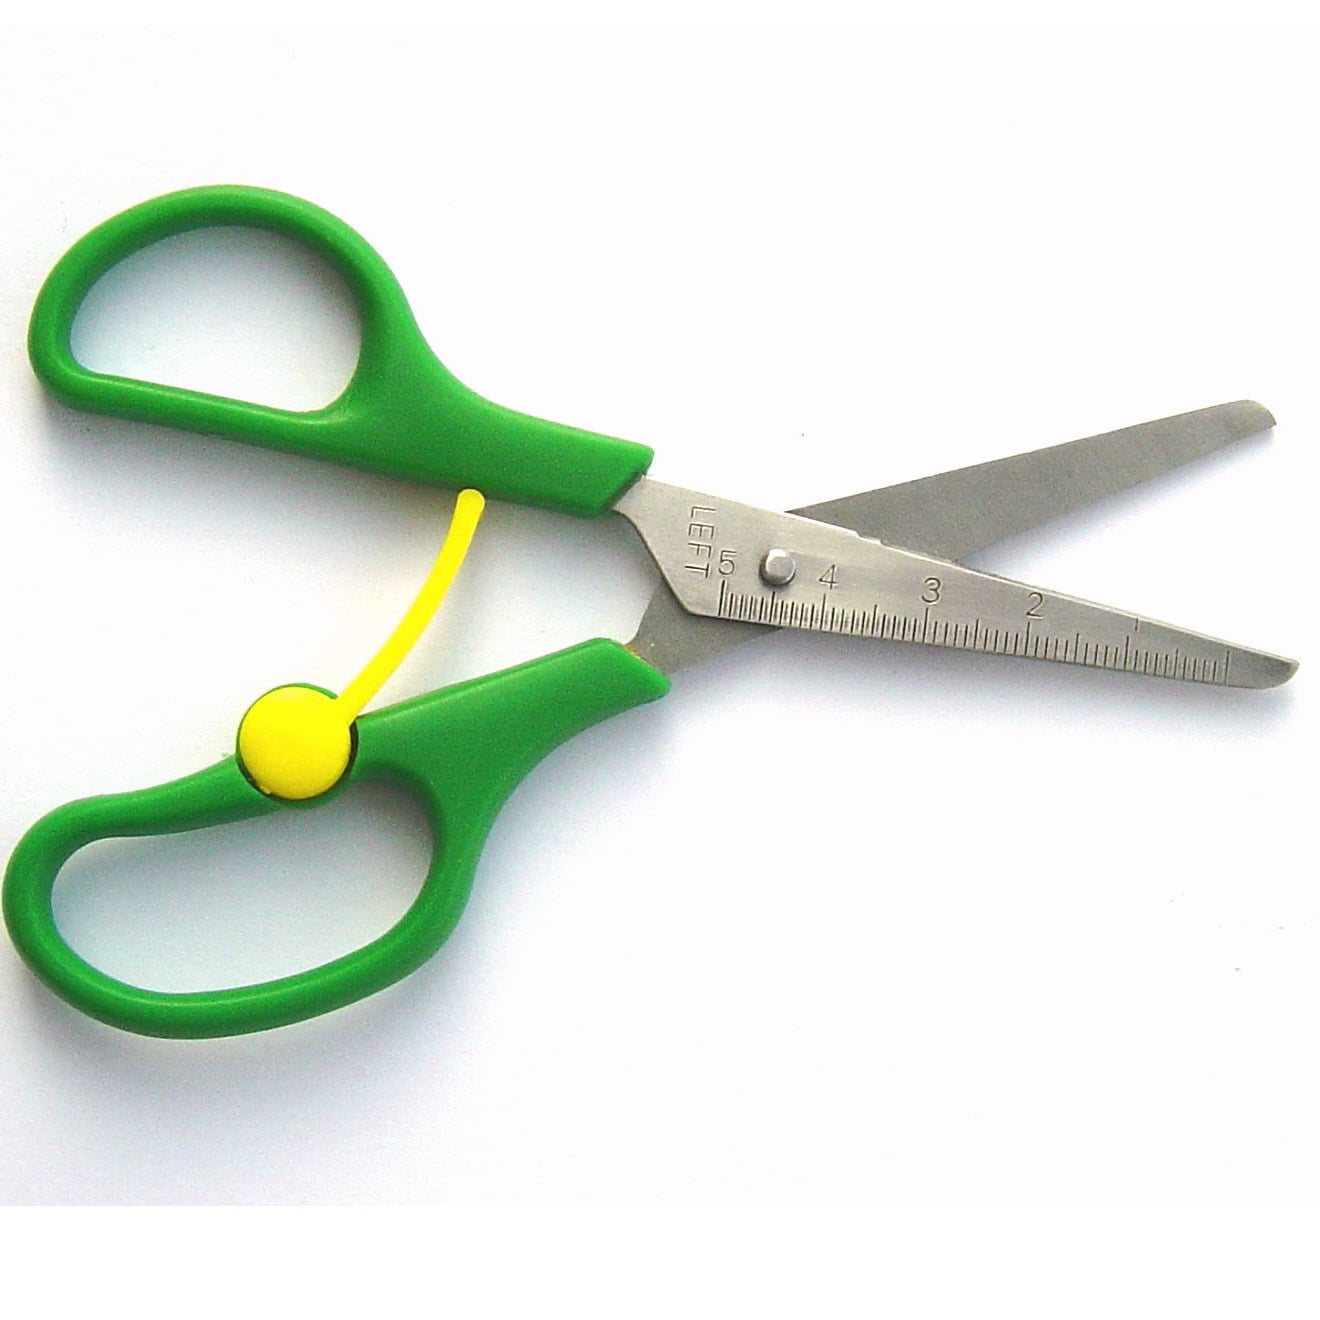 easy to use kids scissors